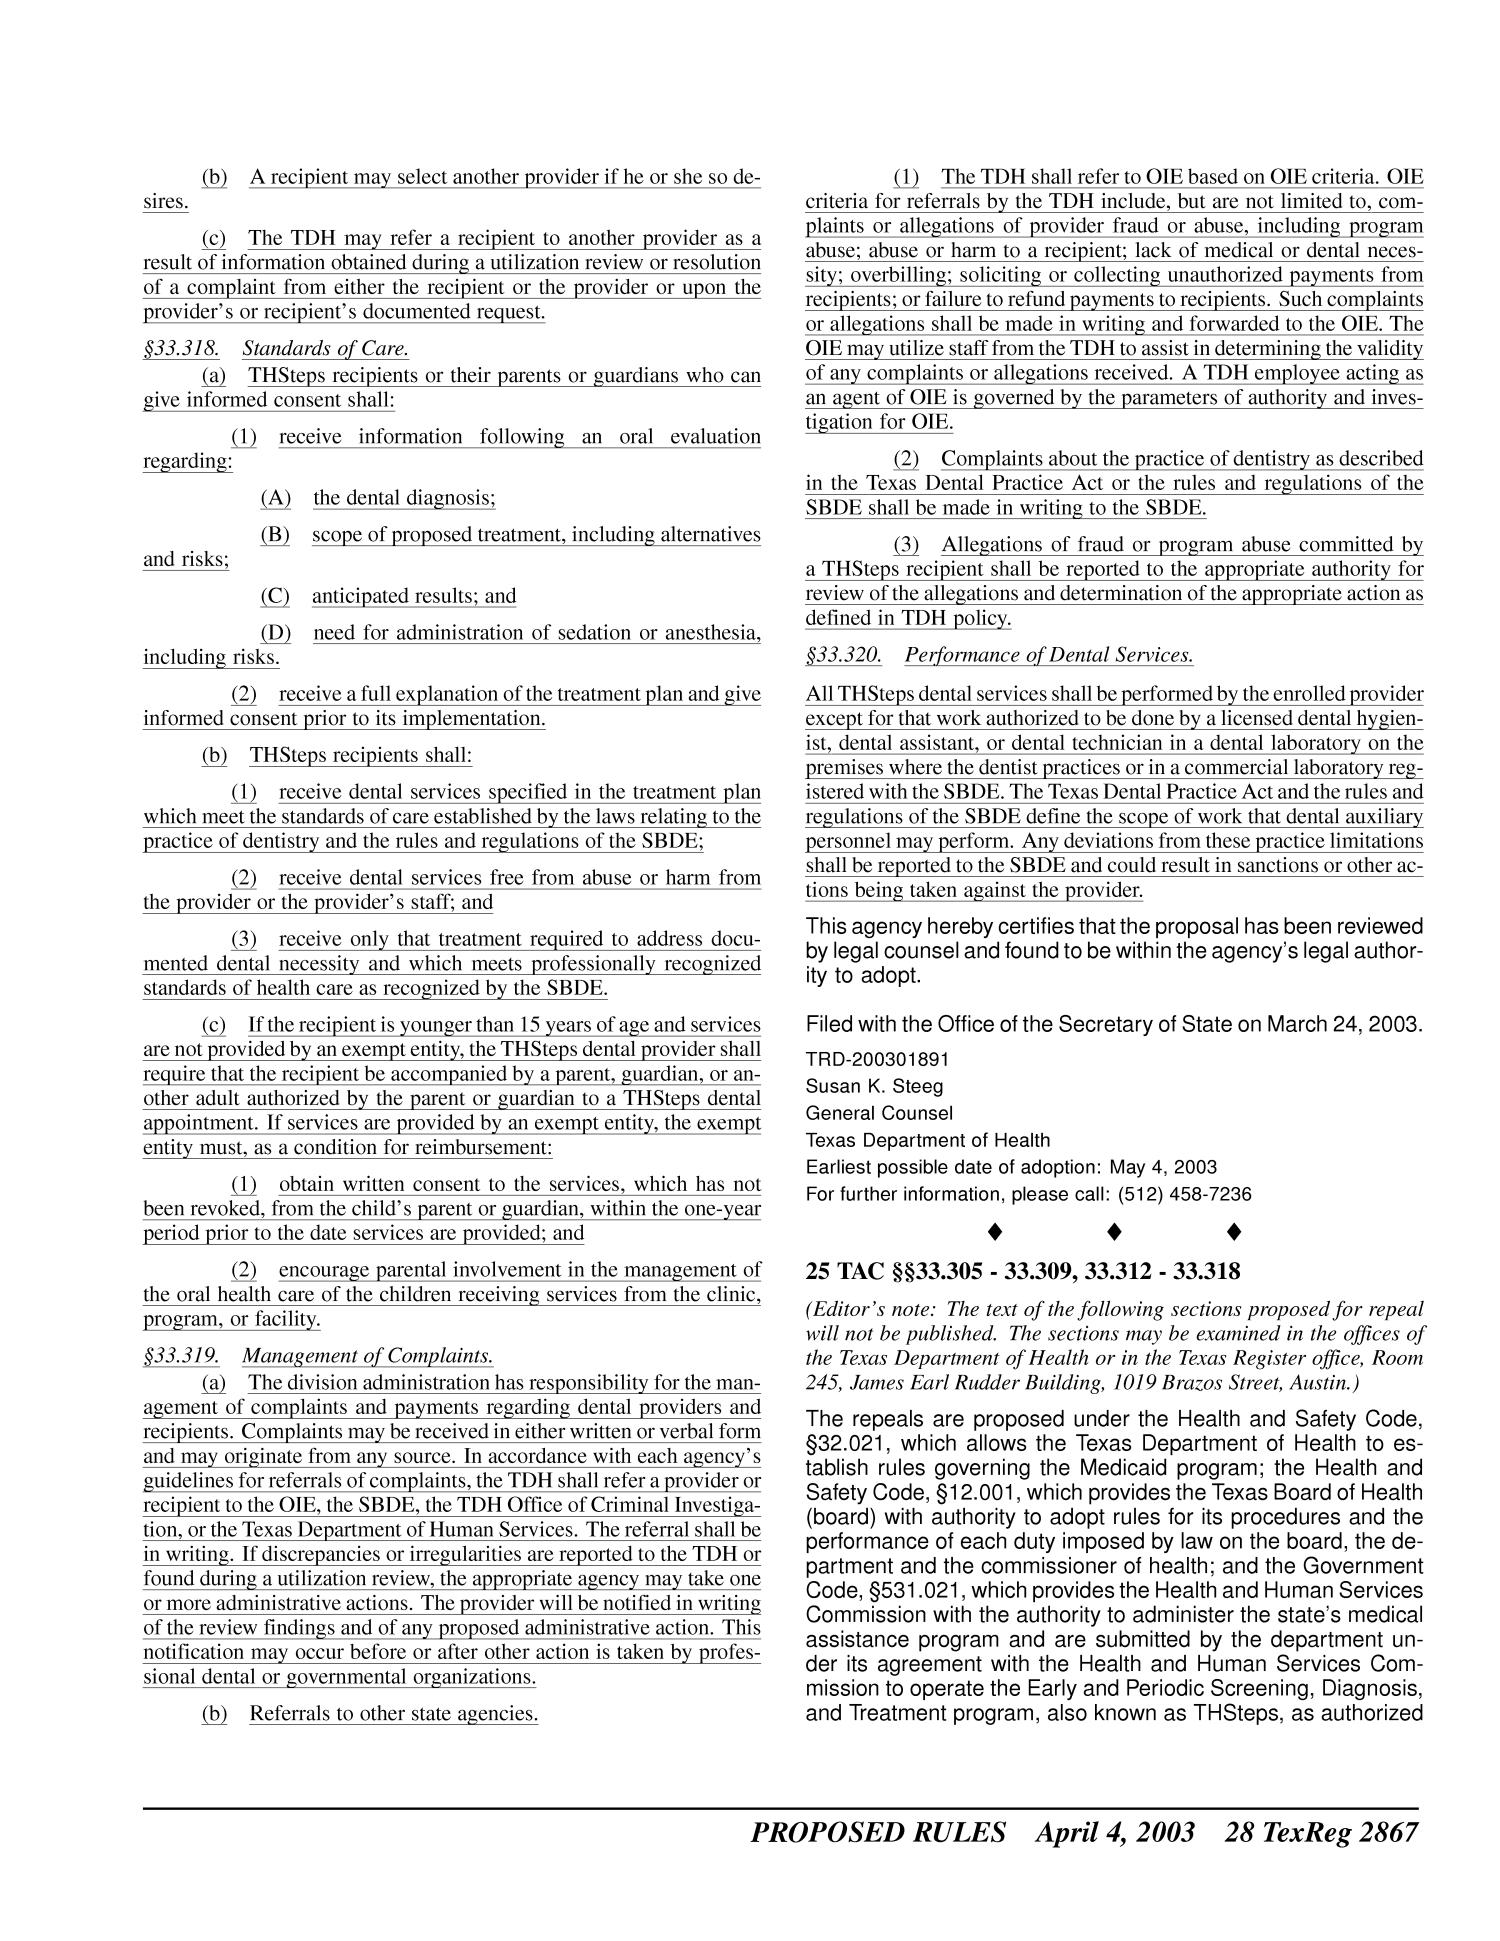 Texas Register, Volume 28, Number 14, Pages 2821-2988, April 4, 2003
                                                
                                                    2867
                                                